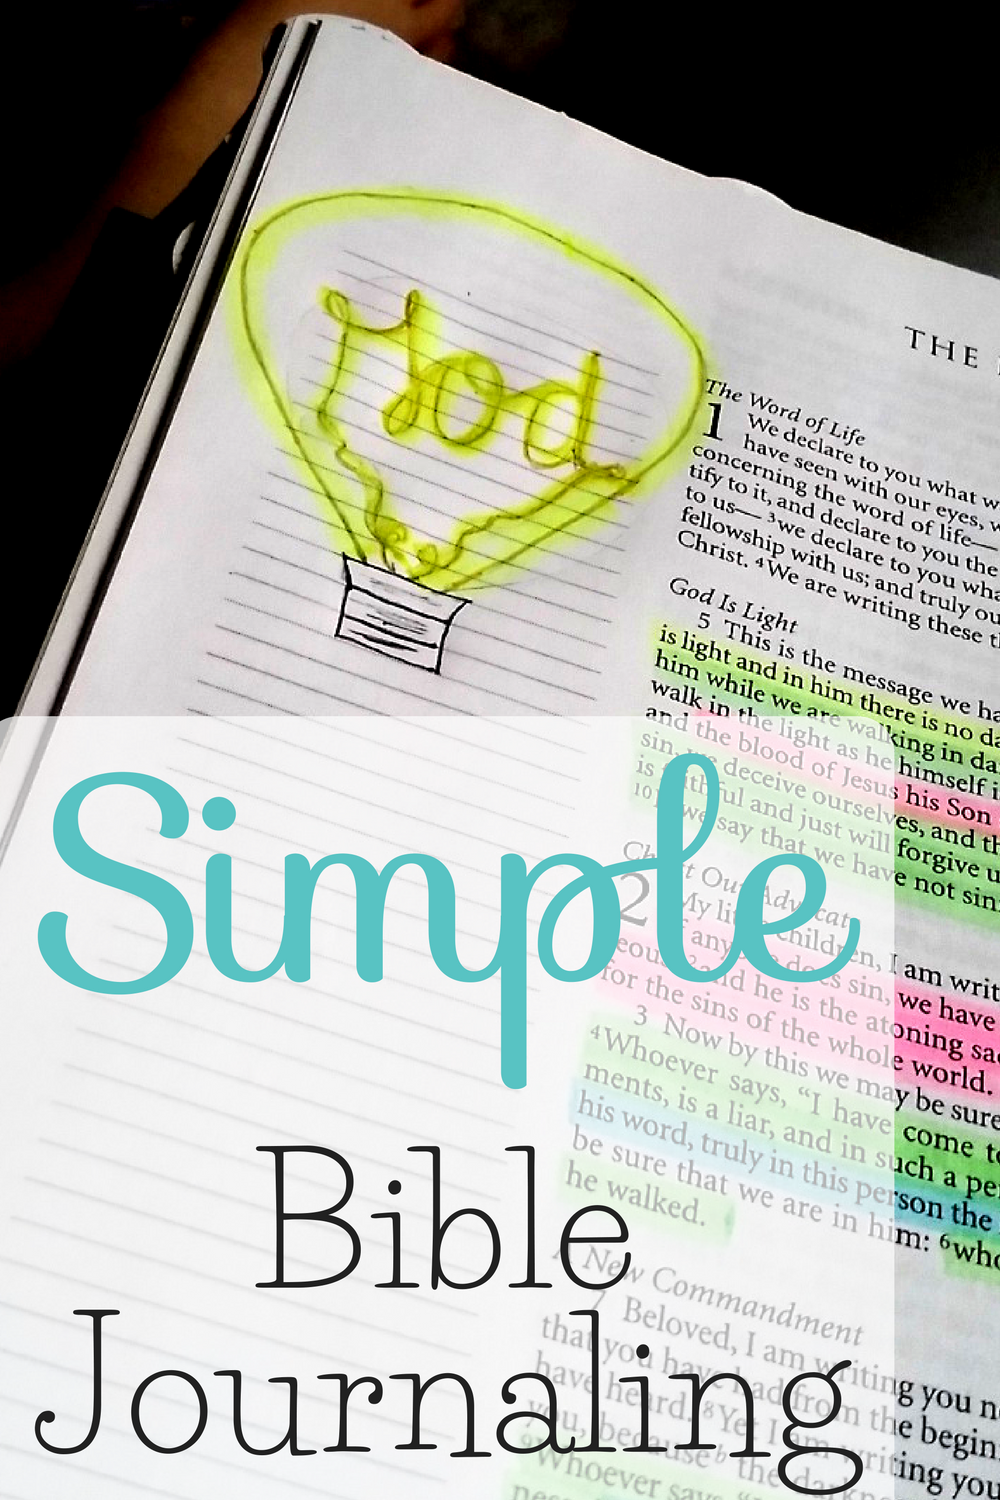 bible-journaling-the-littlest-way